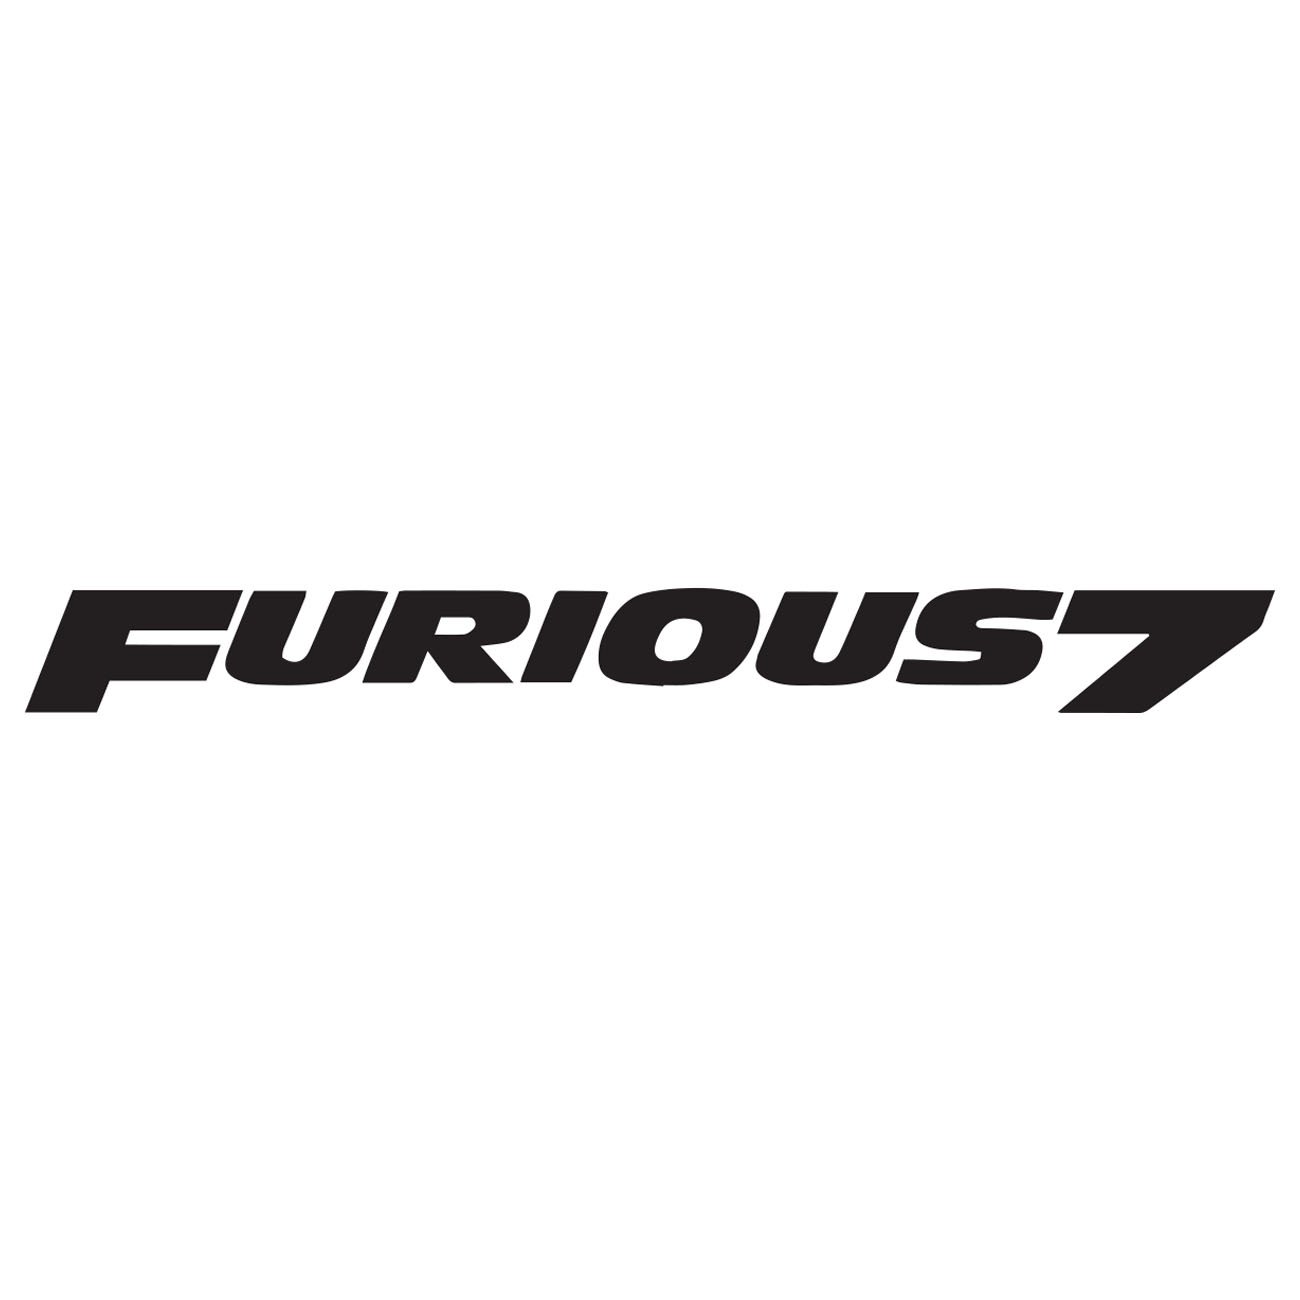 Furious7 - Paul Walker